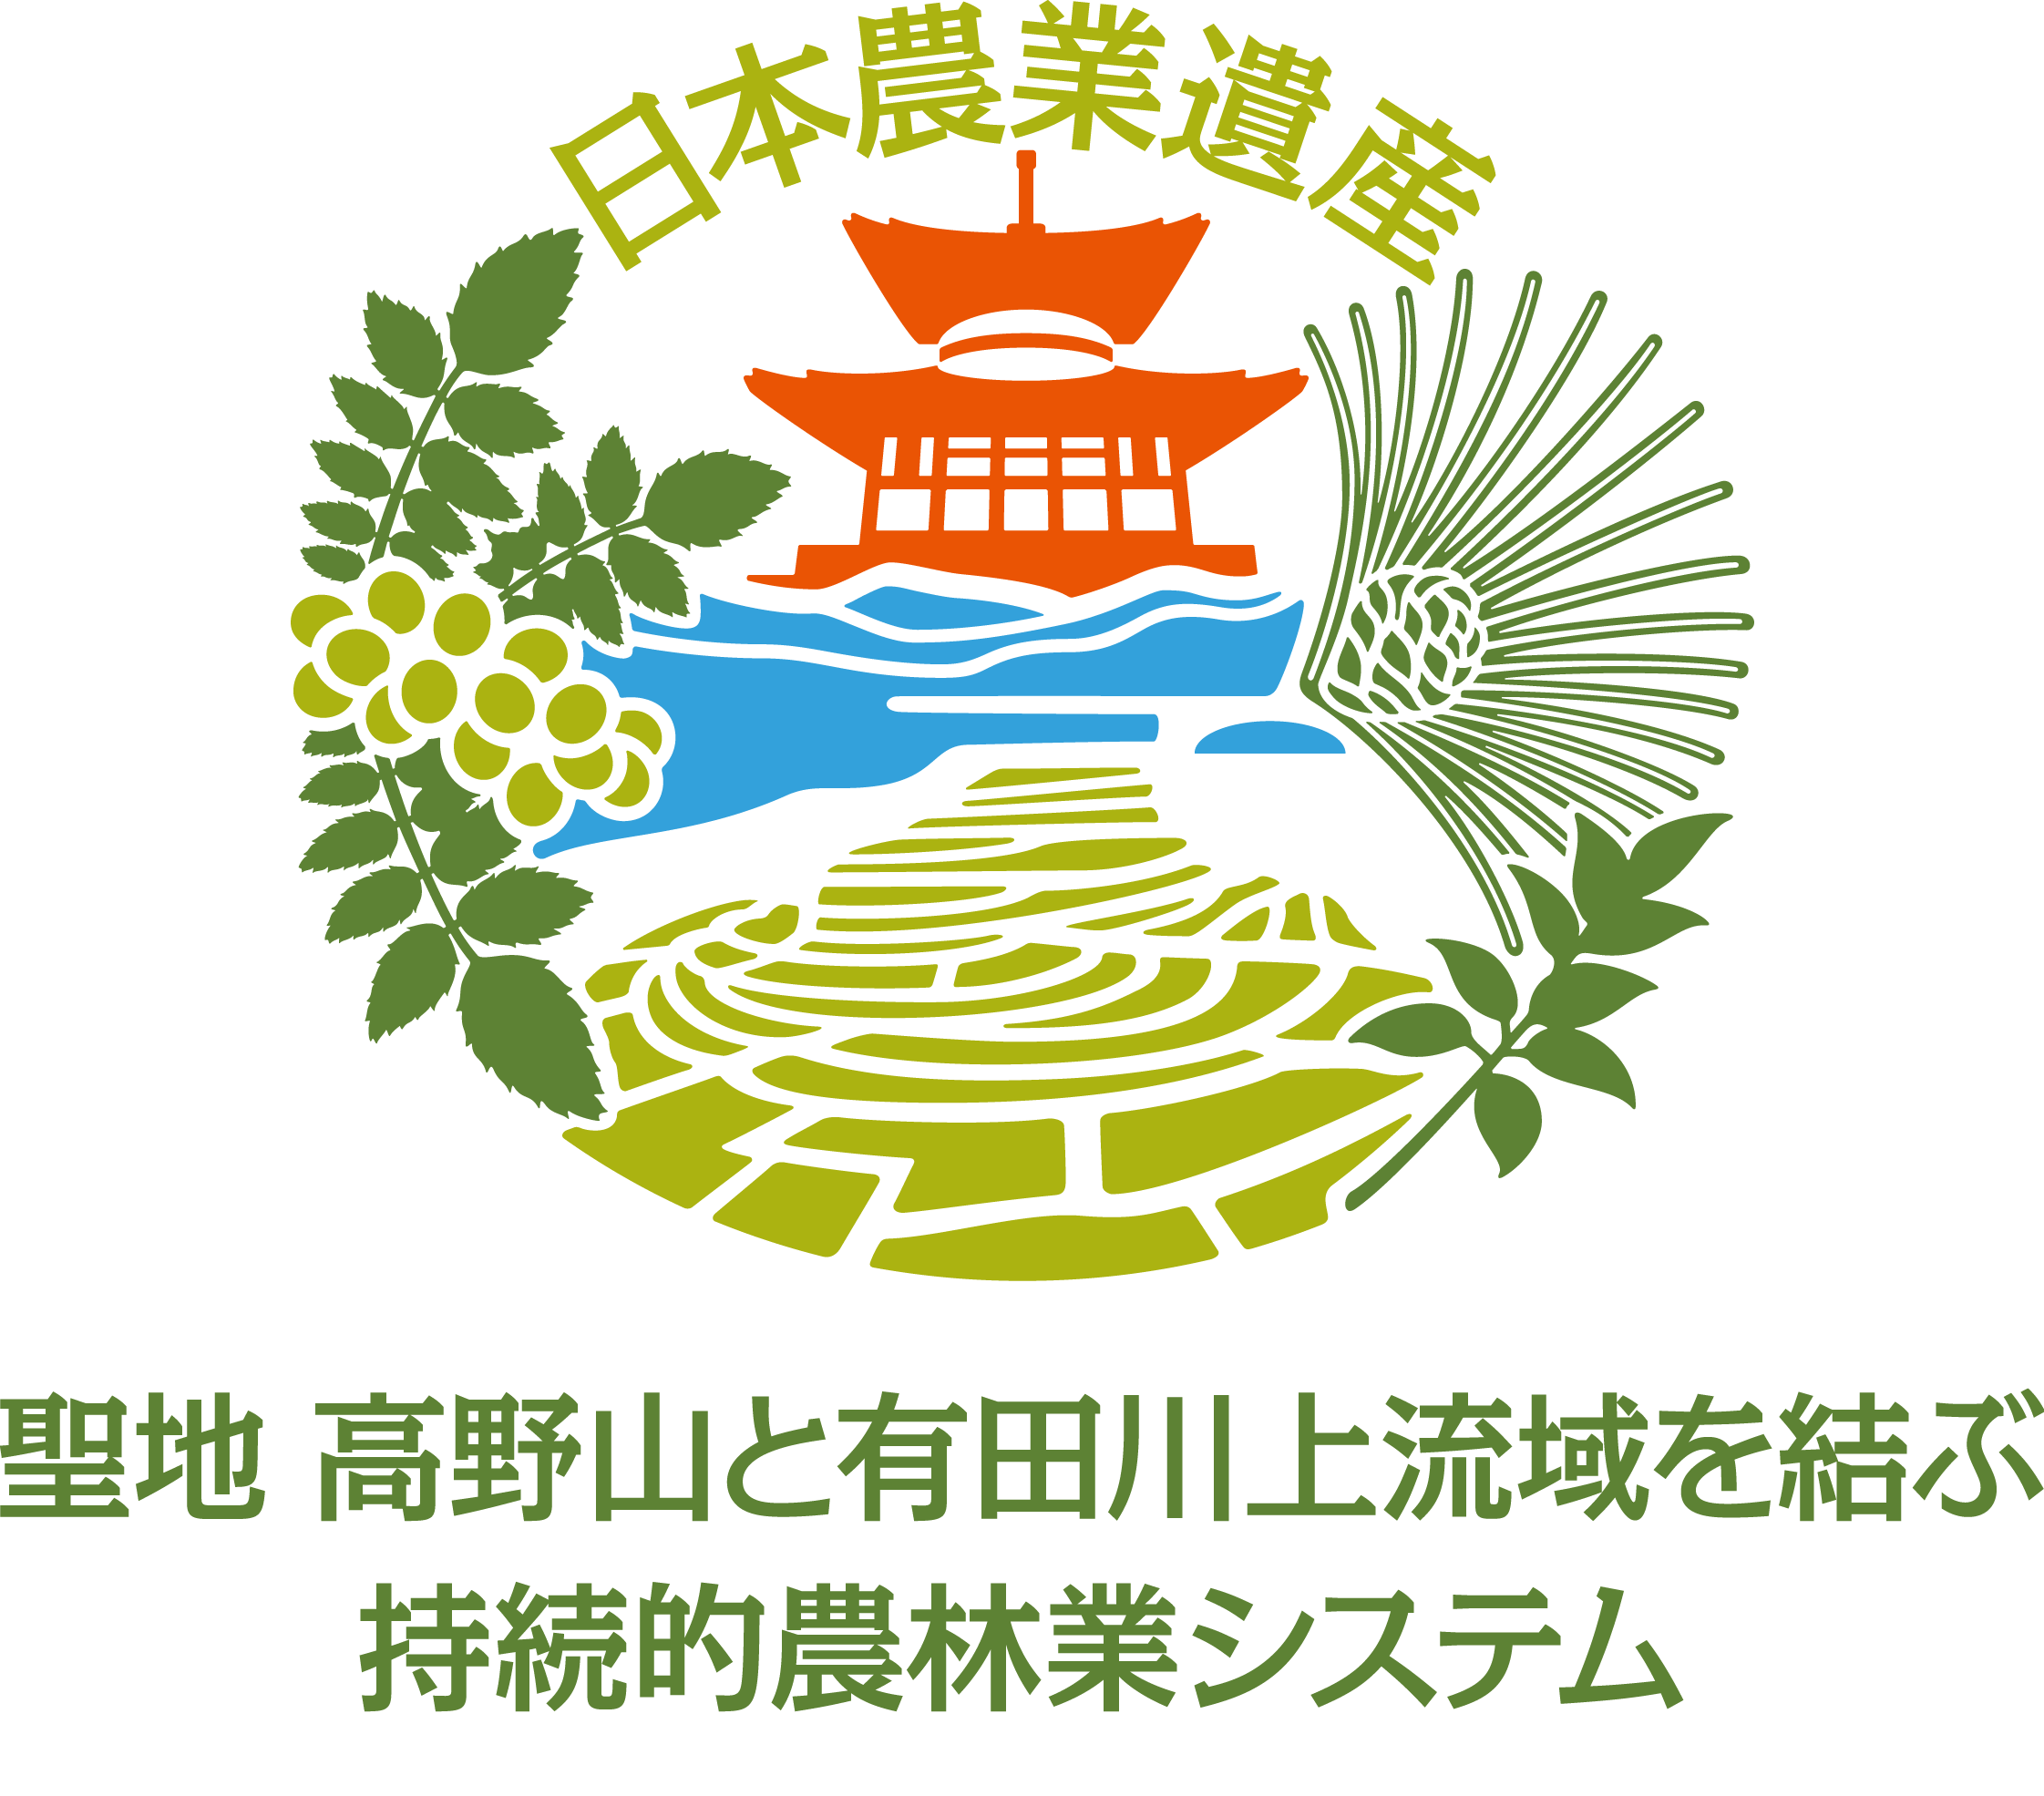 日本農業遺産「聖地 高野山と有田川上流域を結ぶ持続的農林業システム」ロゴマーク～使用申請受付開始しました～